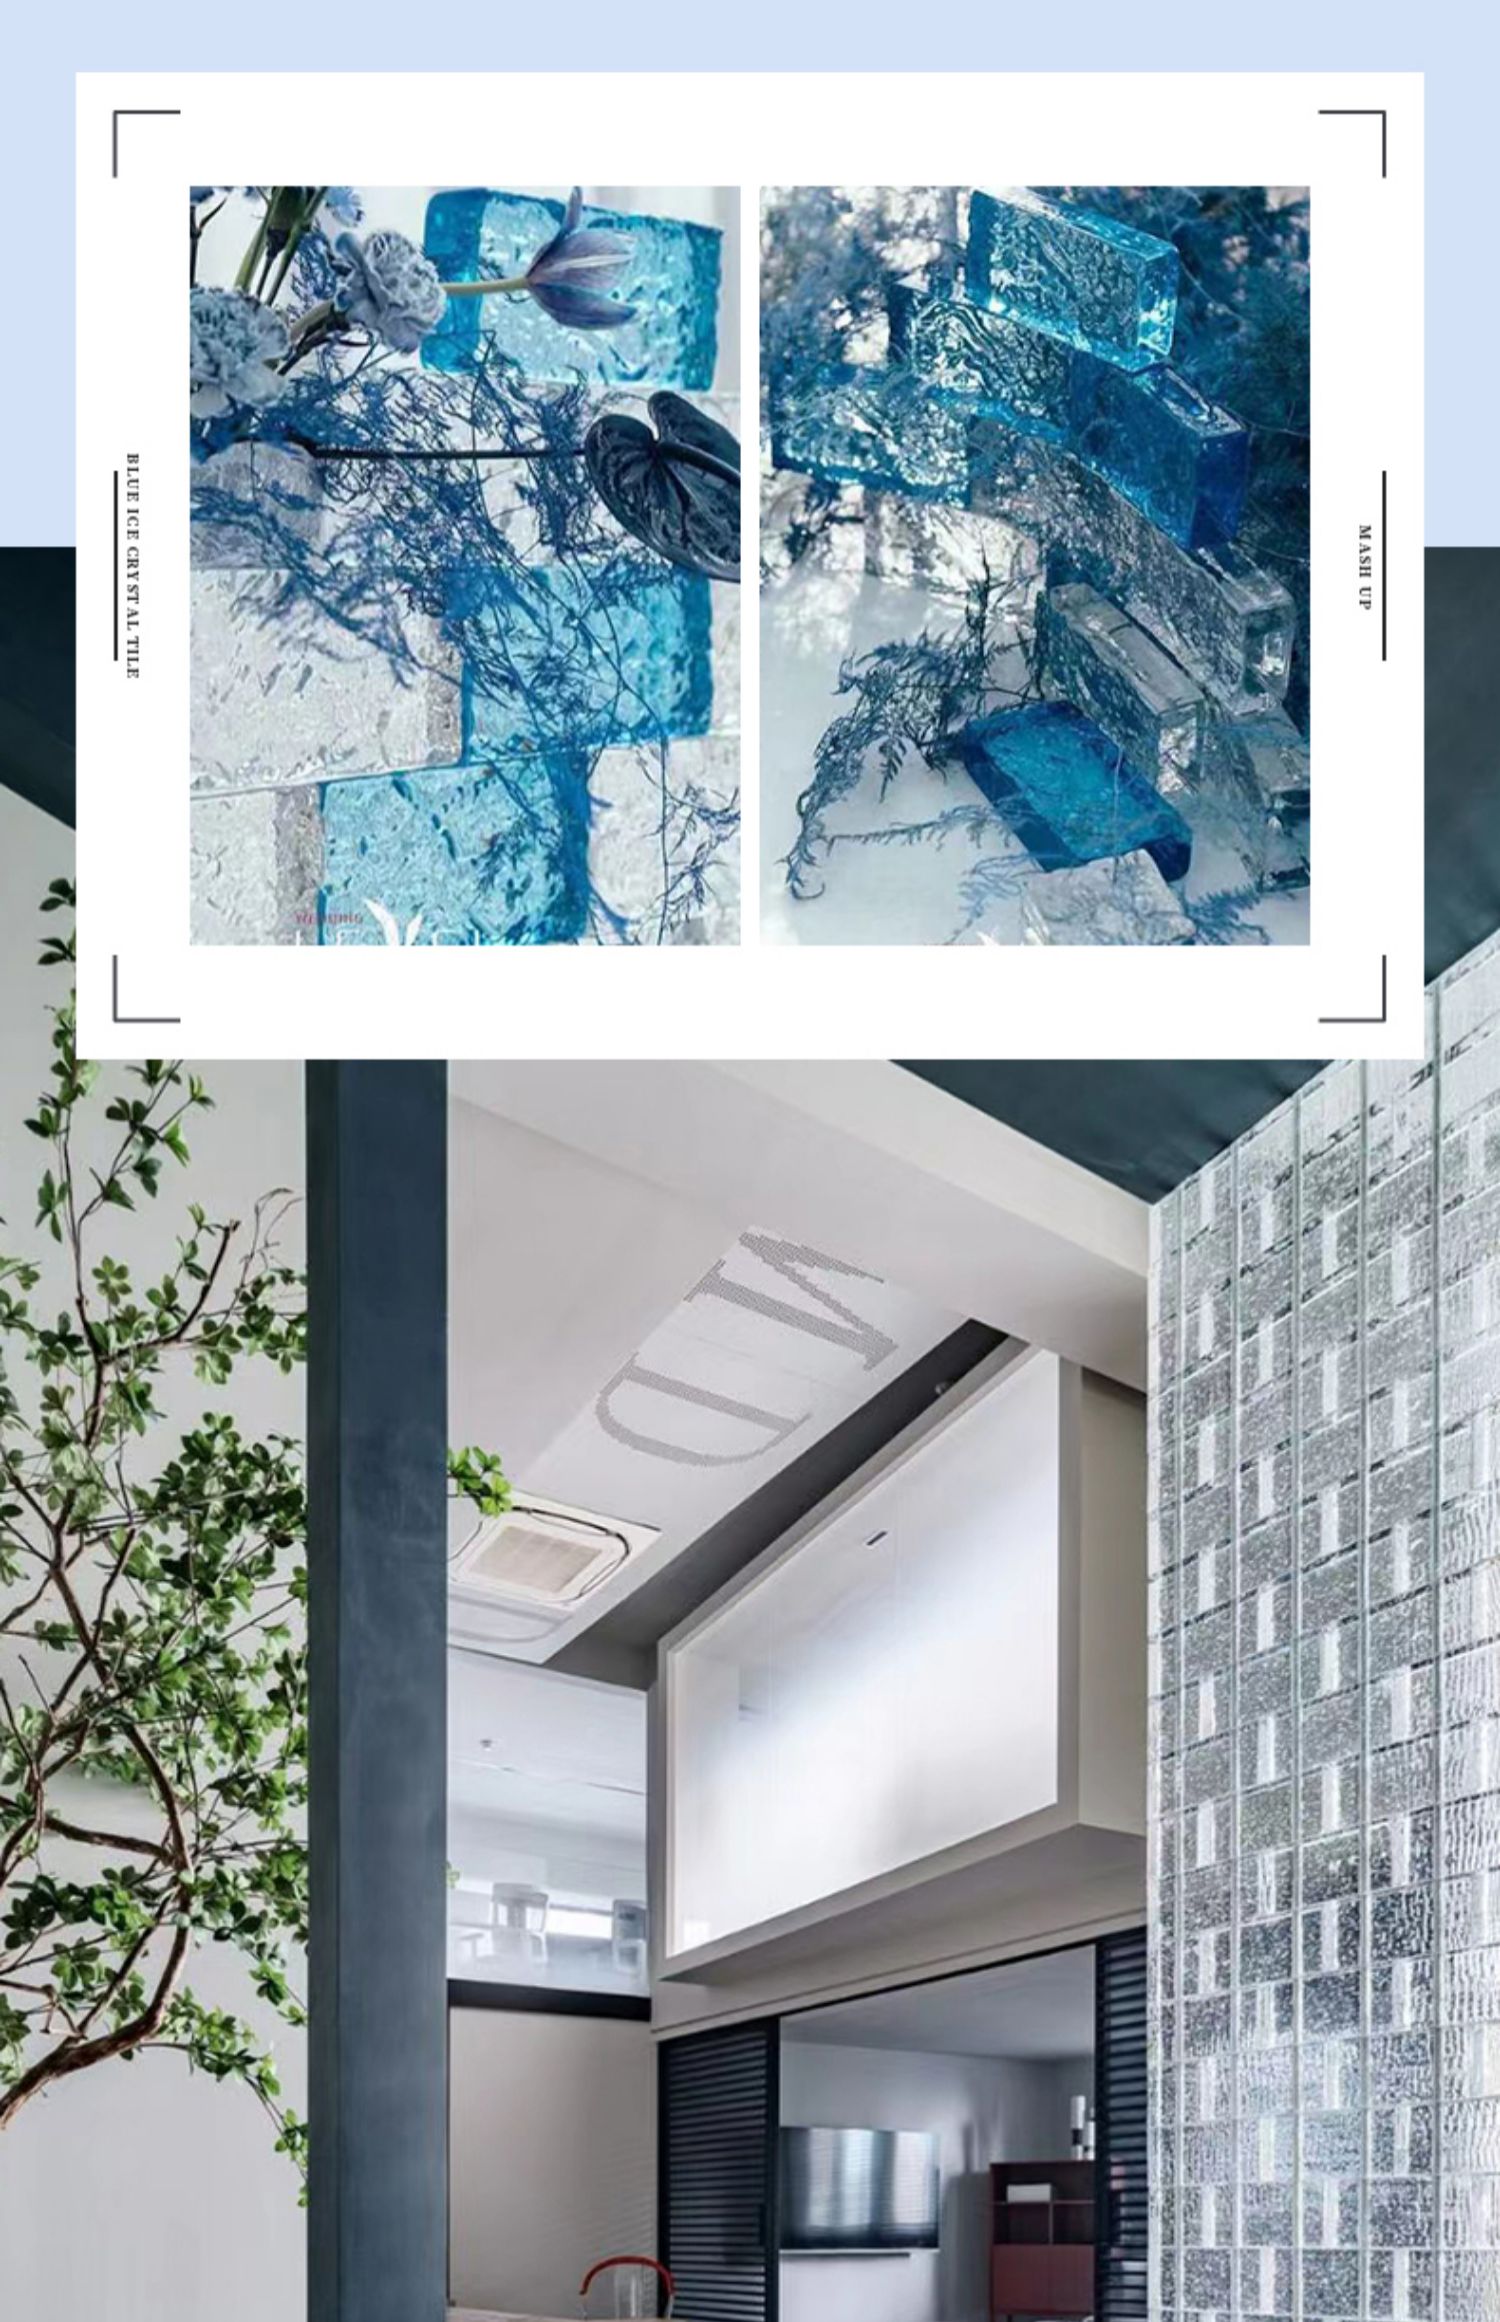 精美墙砖水晶砖玻璃砖完美组合创造完美家居空间详情图2